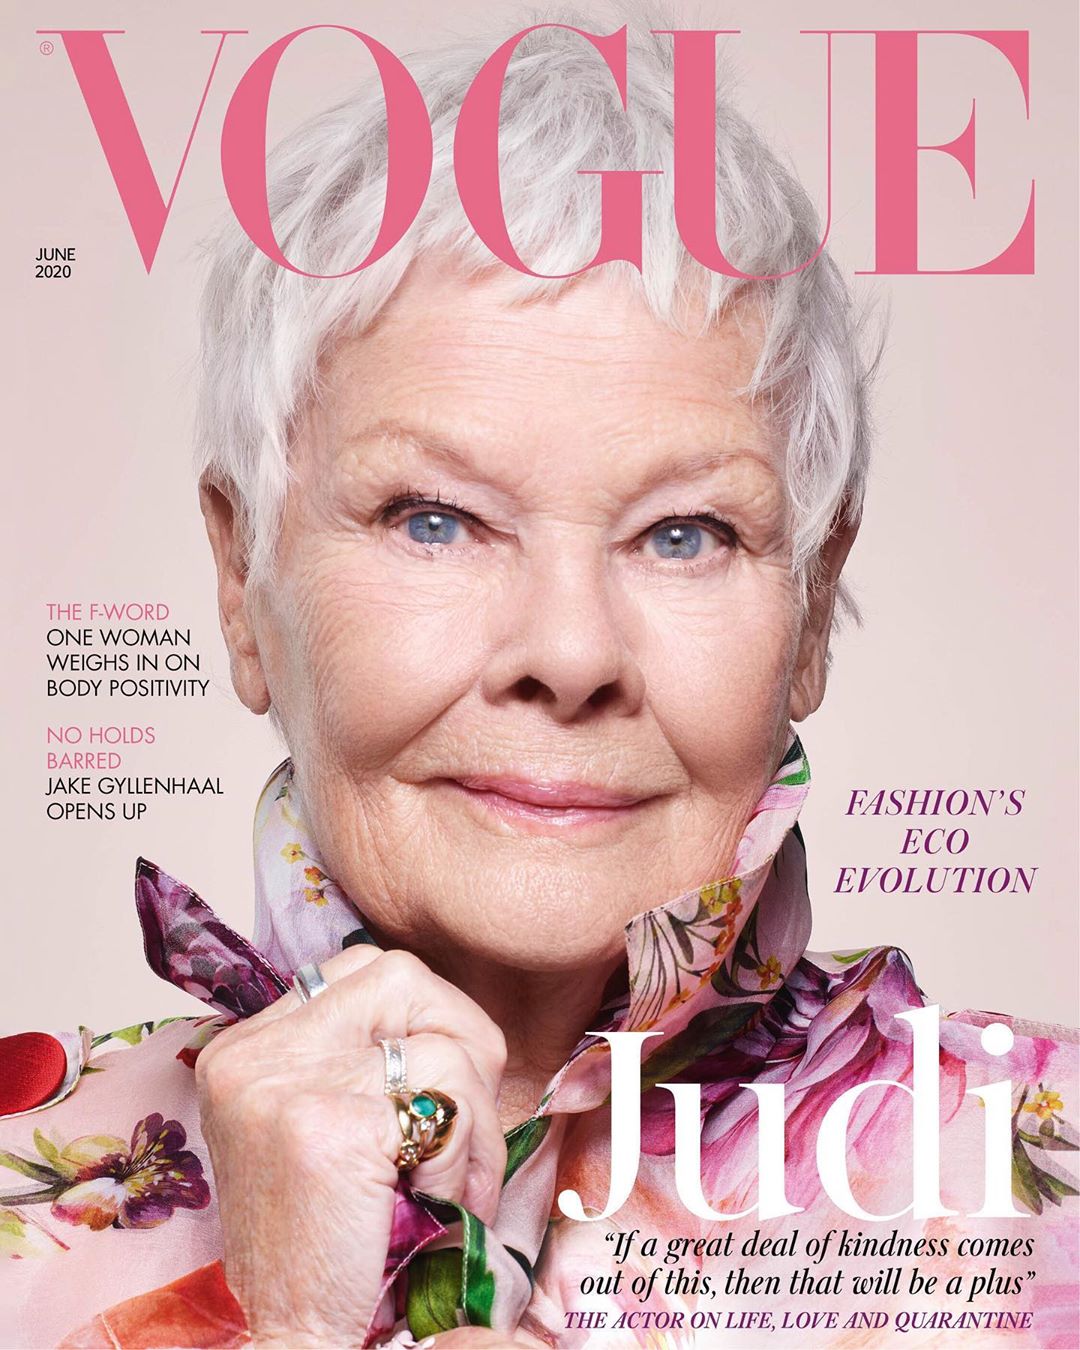 Judi Dench 85 évesen lett a legidősebb Vogue címlaplány